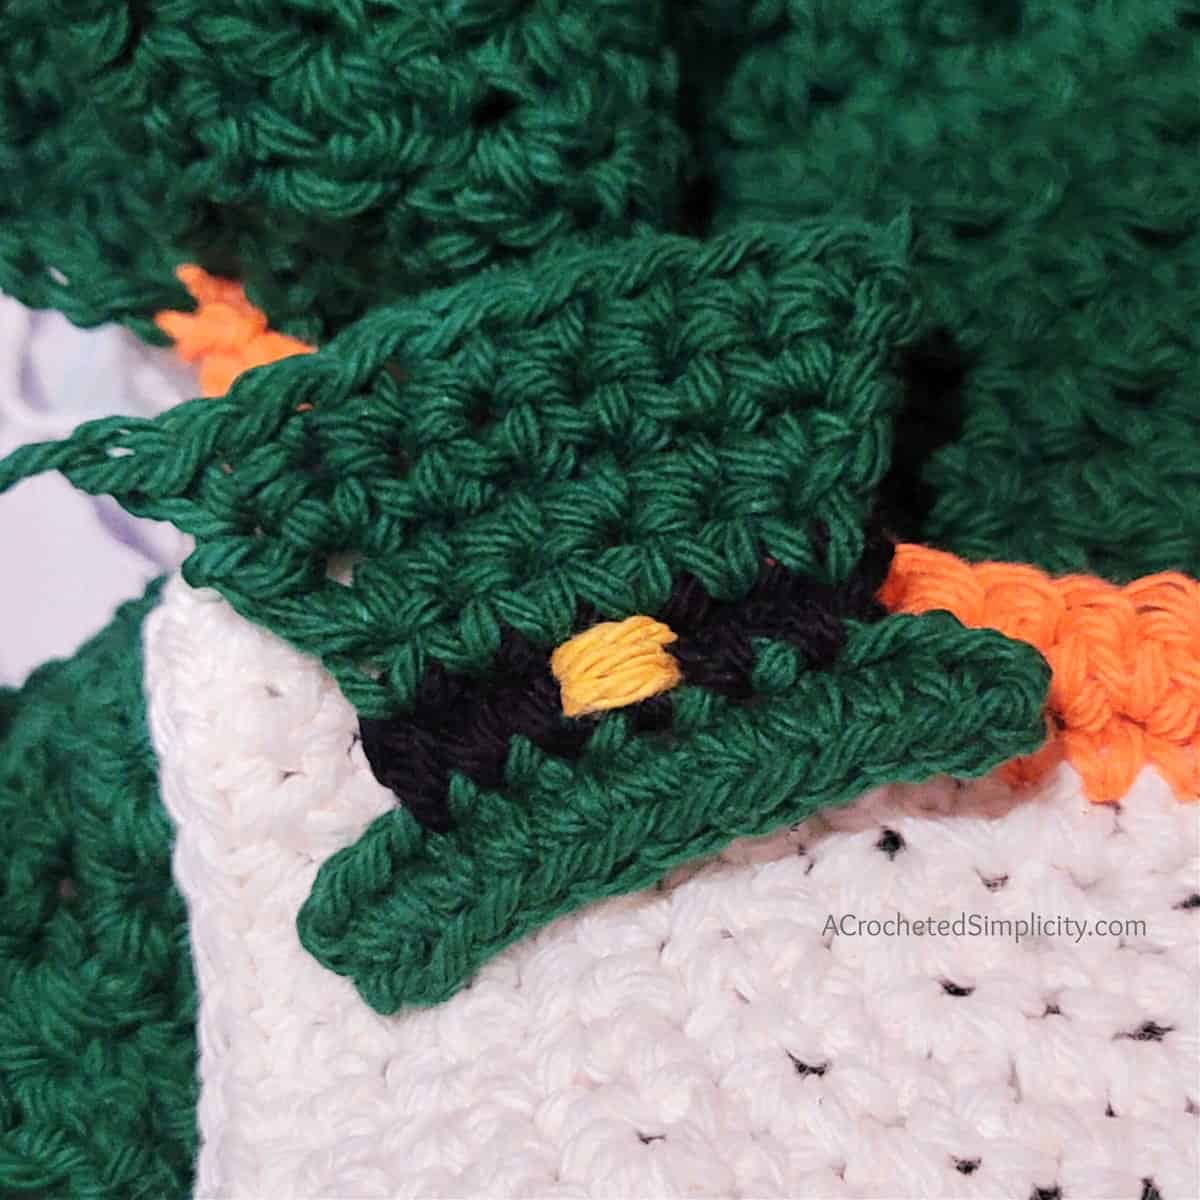 Free Crochet Pattern - Leprechaun Kitchen Towel by A Crocheted Simplicity #crochet #freecrochetpattern #crochetleprechaun #crochethandtowel #crochetkitchentowel #freecrochetleprechaun #freecrochettowel #stpaddystowel #kitchentowel #leprechaundecorations